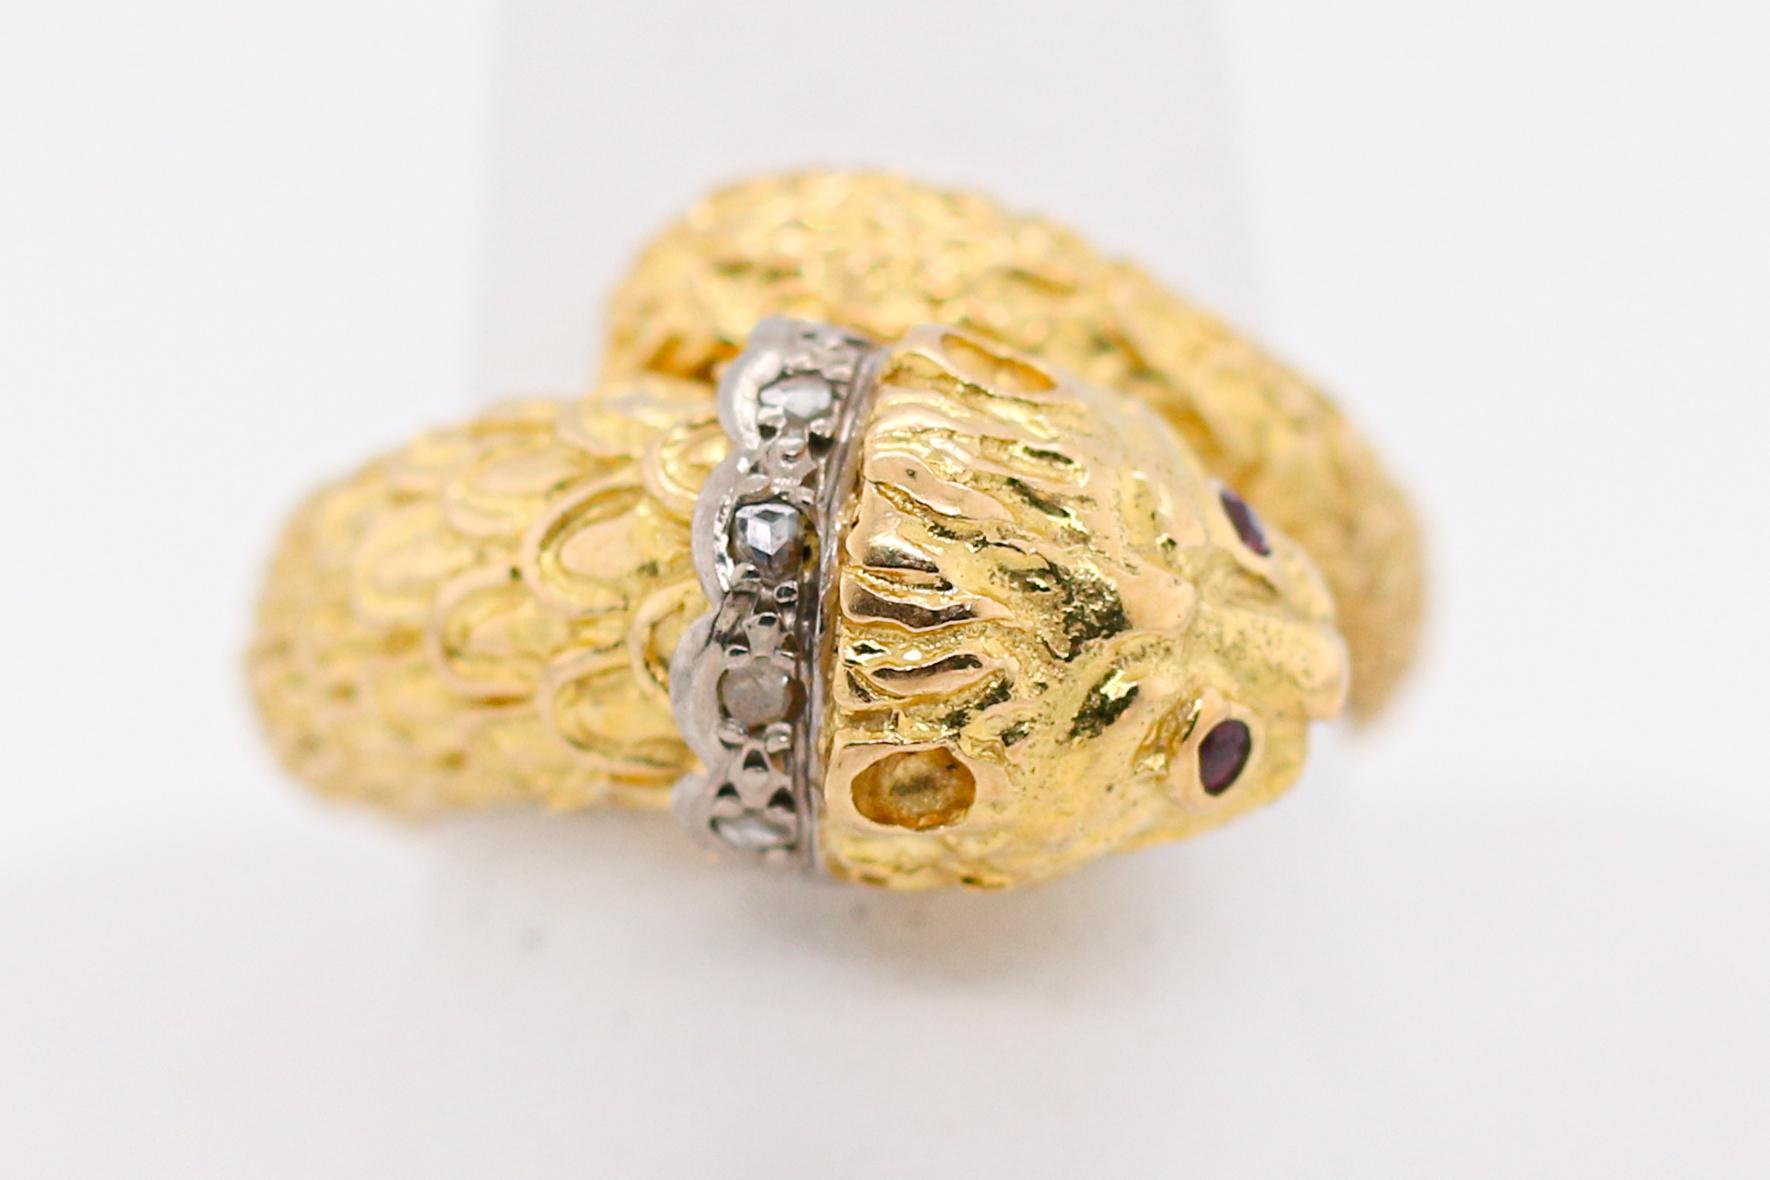 Incroyable bague du célèbre designer grec, Lalaounis.  Cette bague en or jaune 18 carats avec un diamant aux yeux de rubis s'enroule autour de votre doigt comme par magie.  